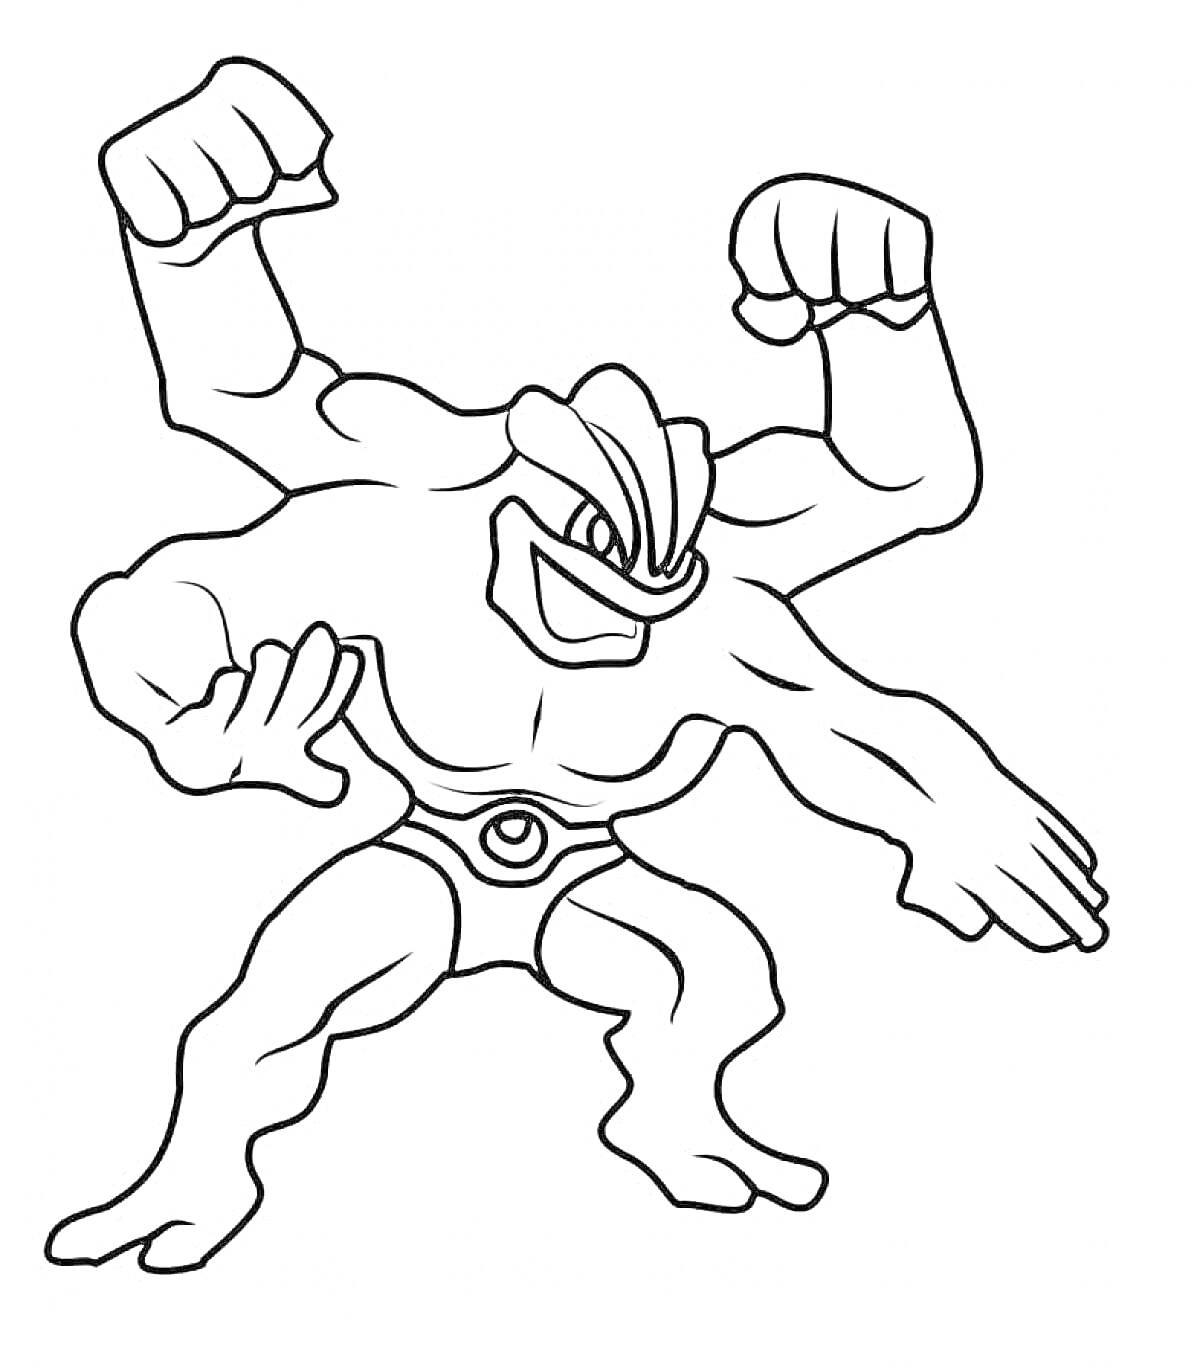 Раскраска Персонаж с четырьмя руками и поднятыми кулаками из серии Гуджитсу